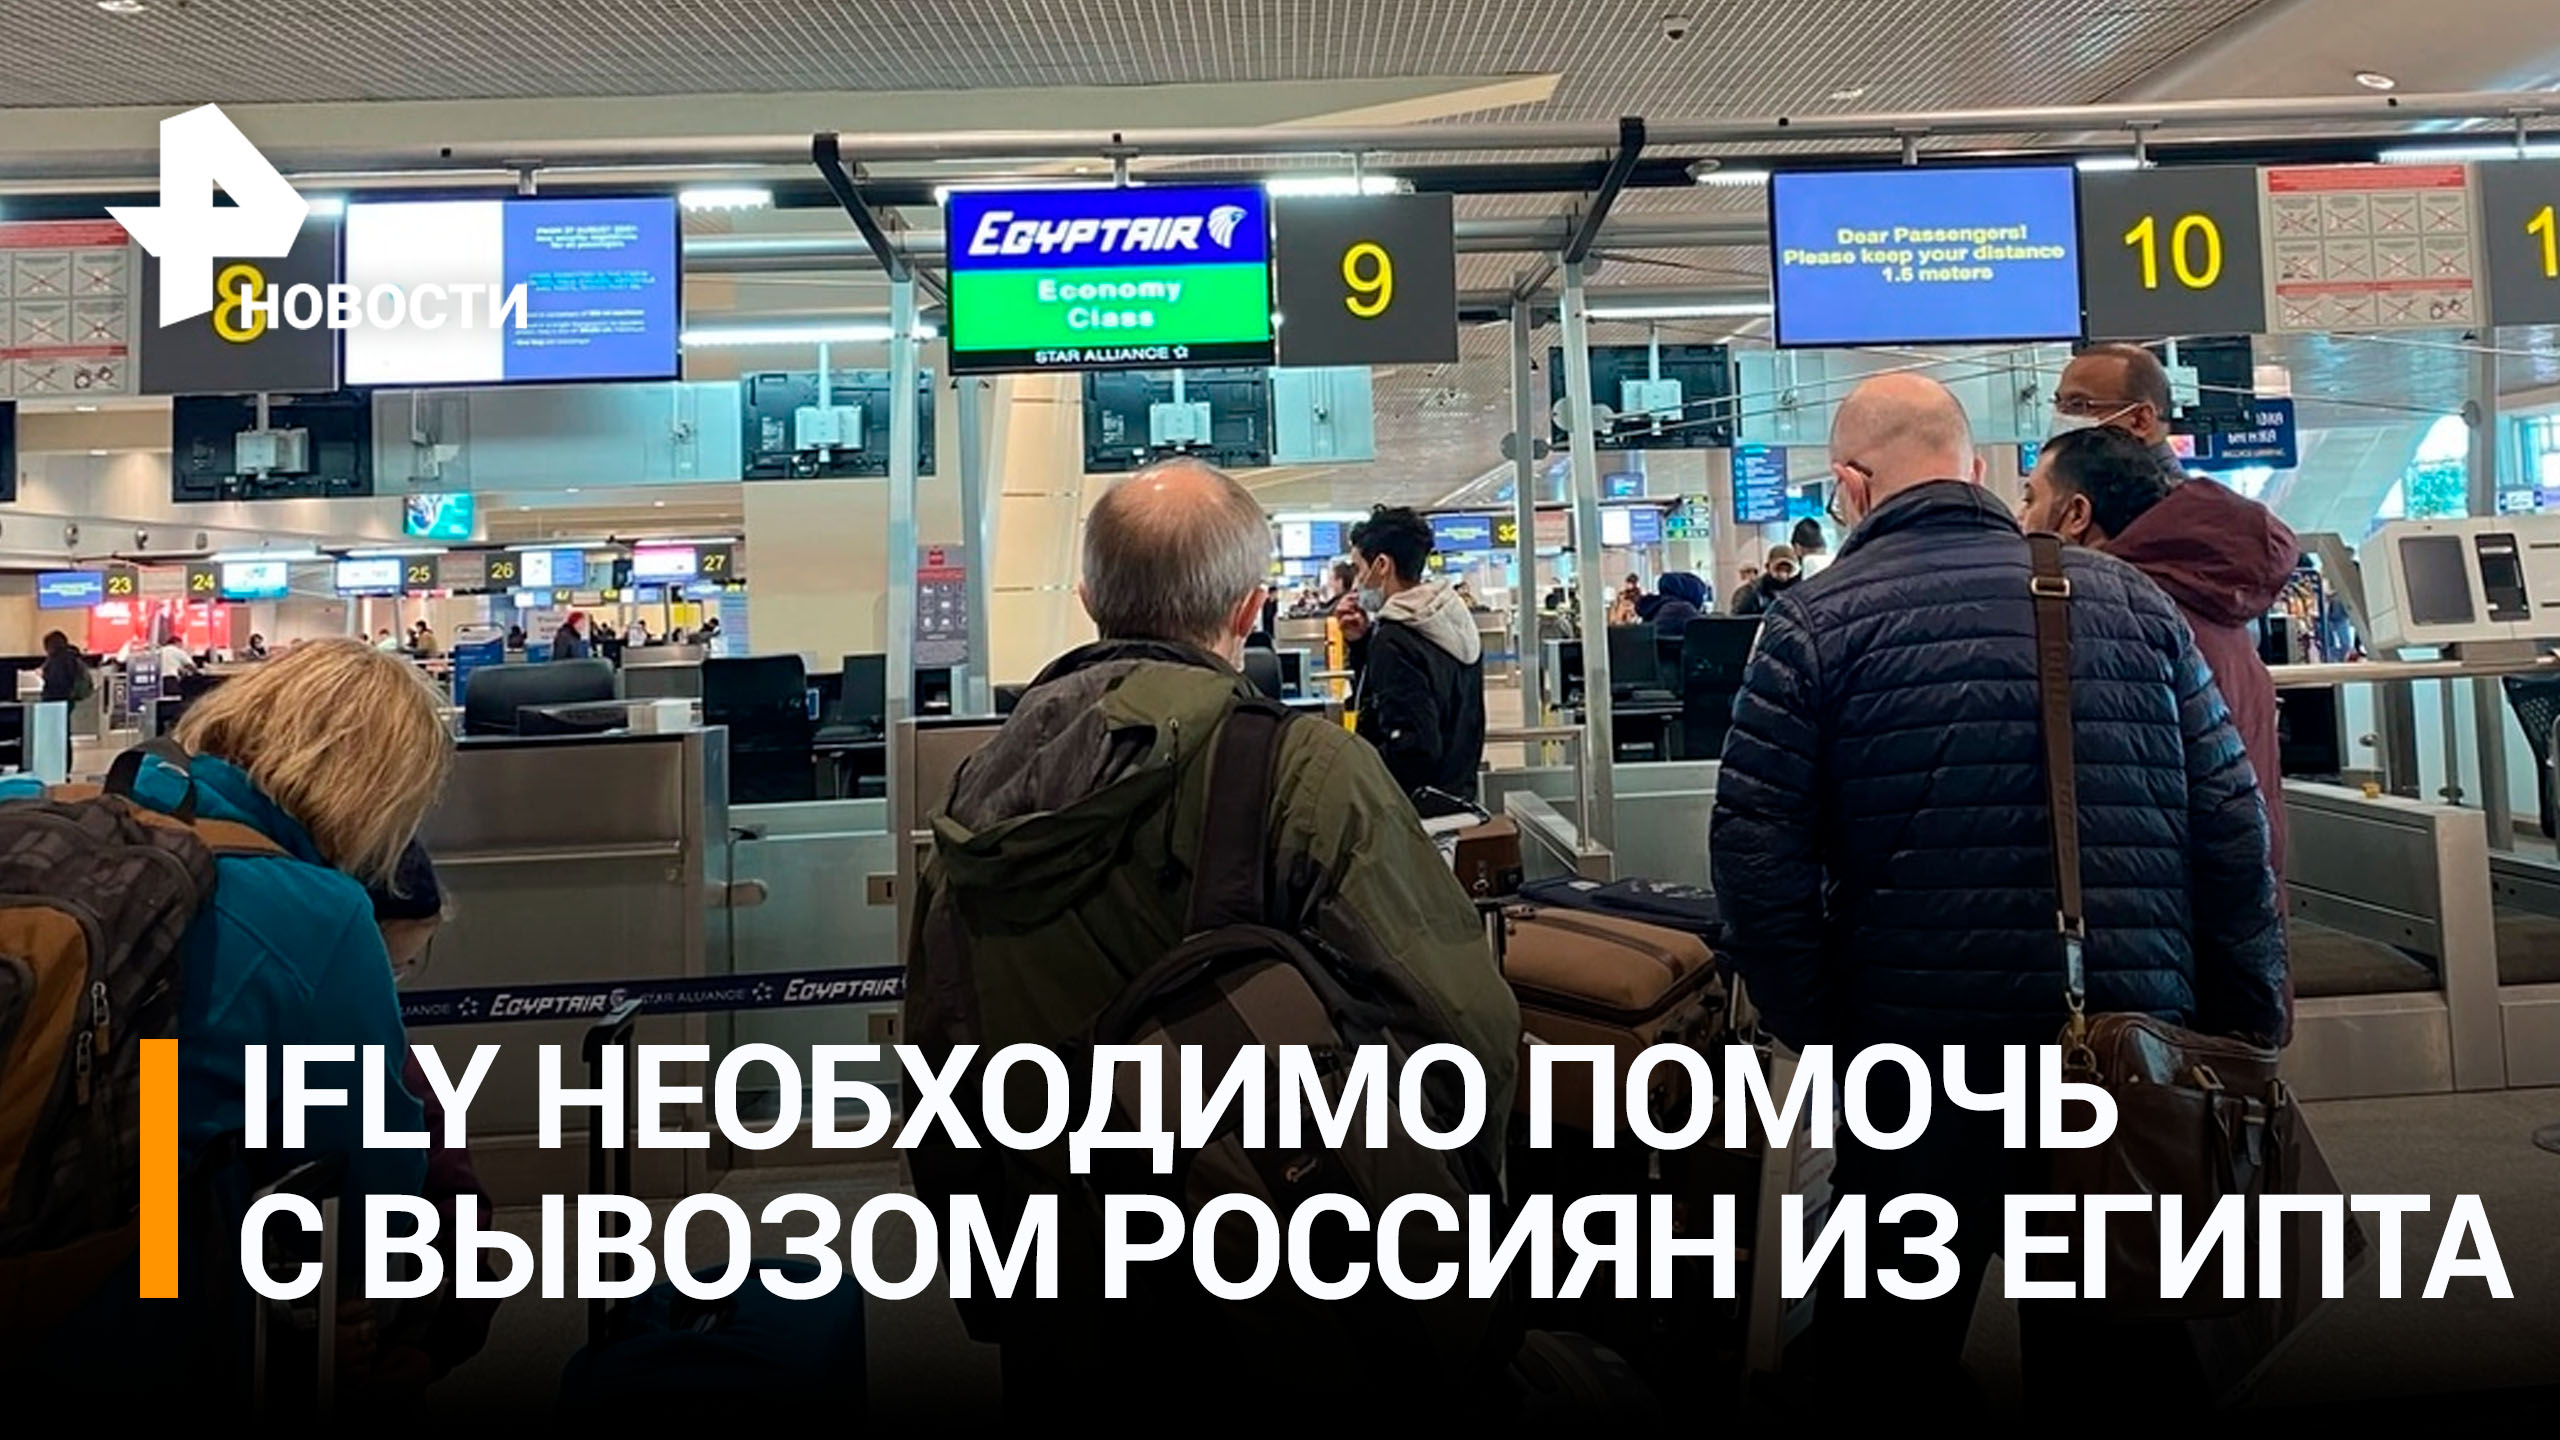 В Росавиации пообещали помочь iFly вывезти россиян из Египта / РЕН Новости